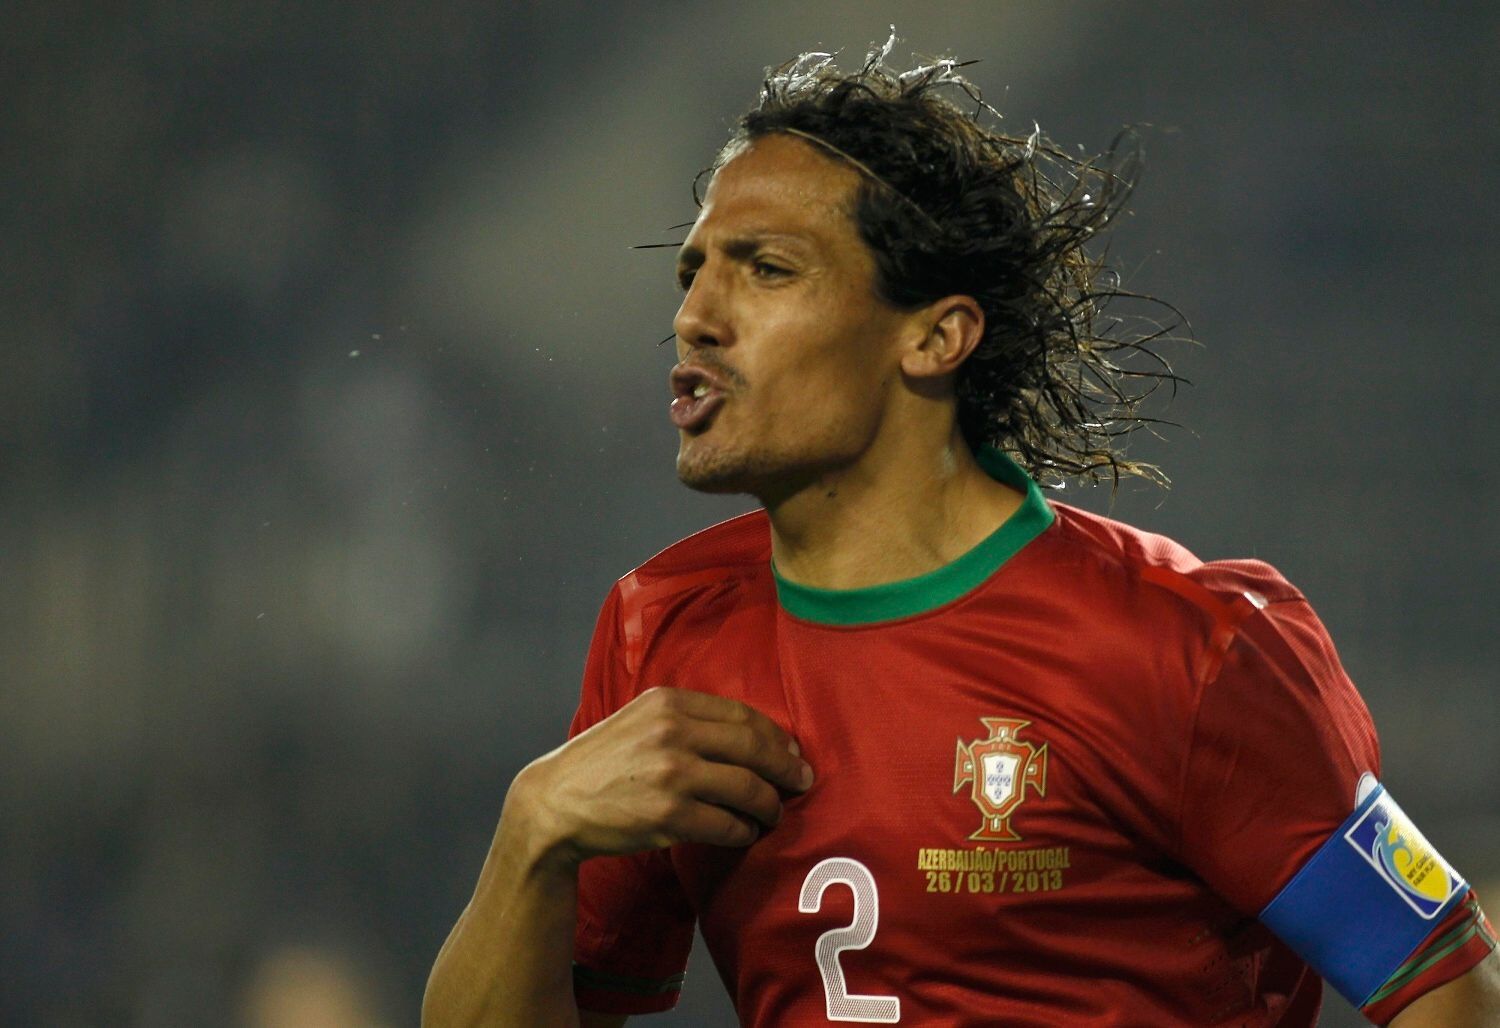 Fotbal, Ázerbajdžán - Portugalsko: Bruno Alves